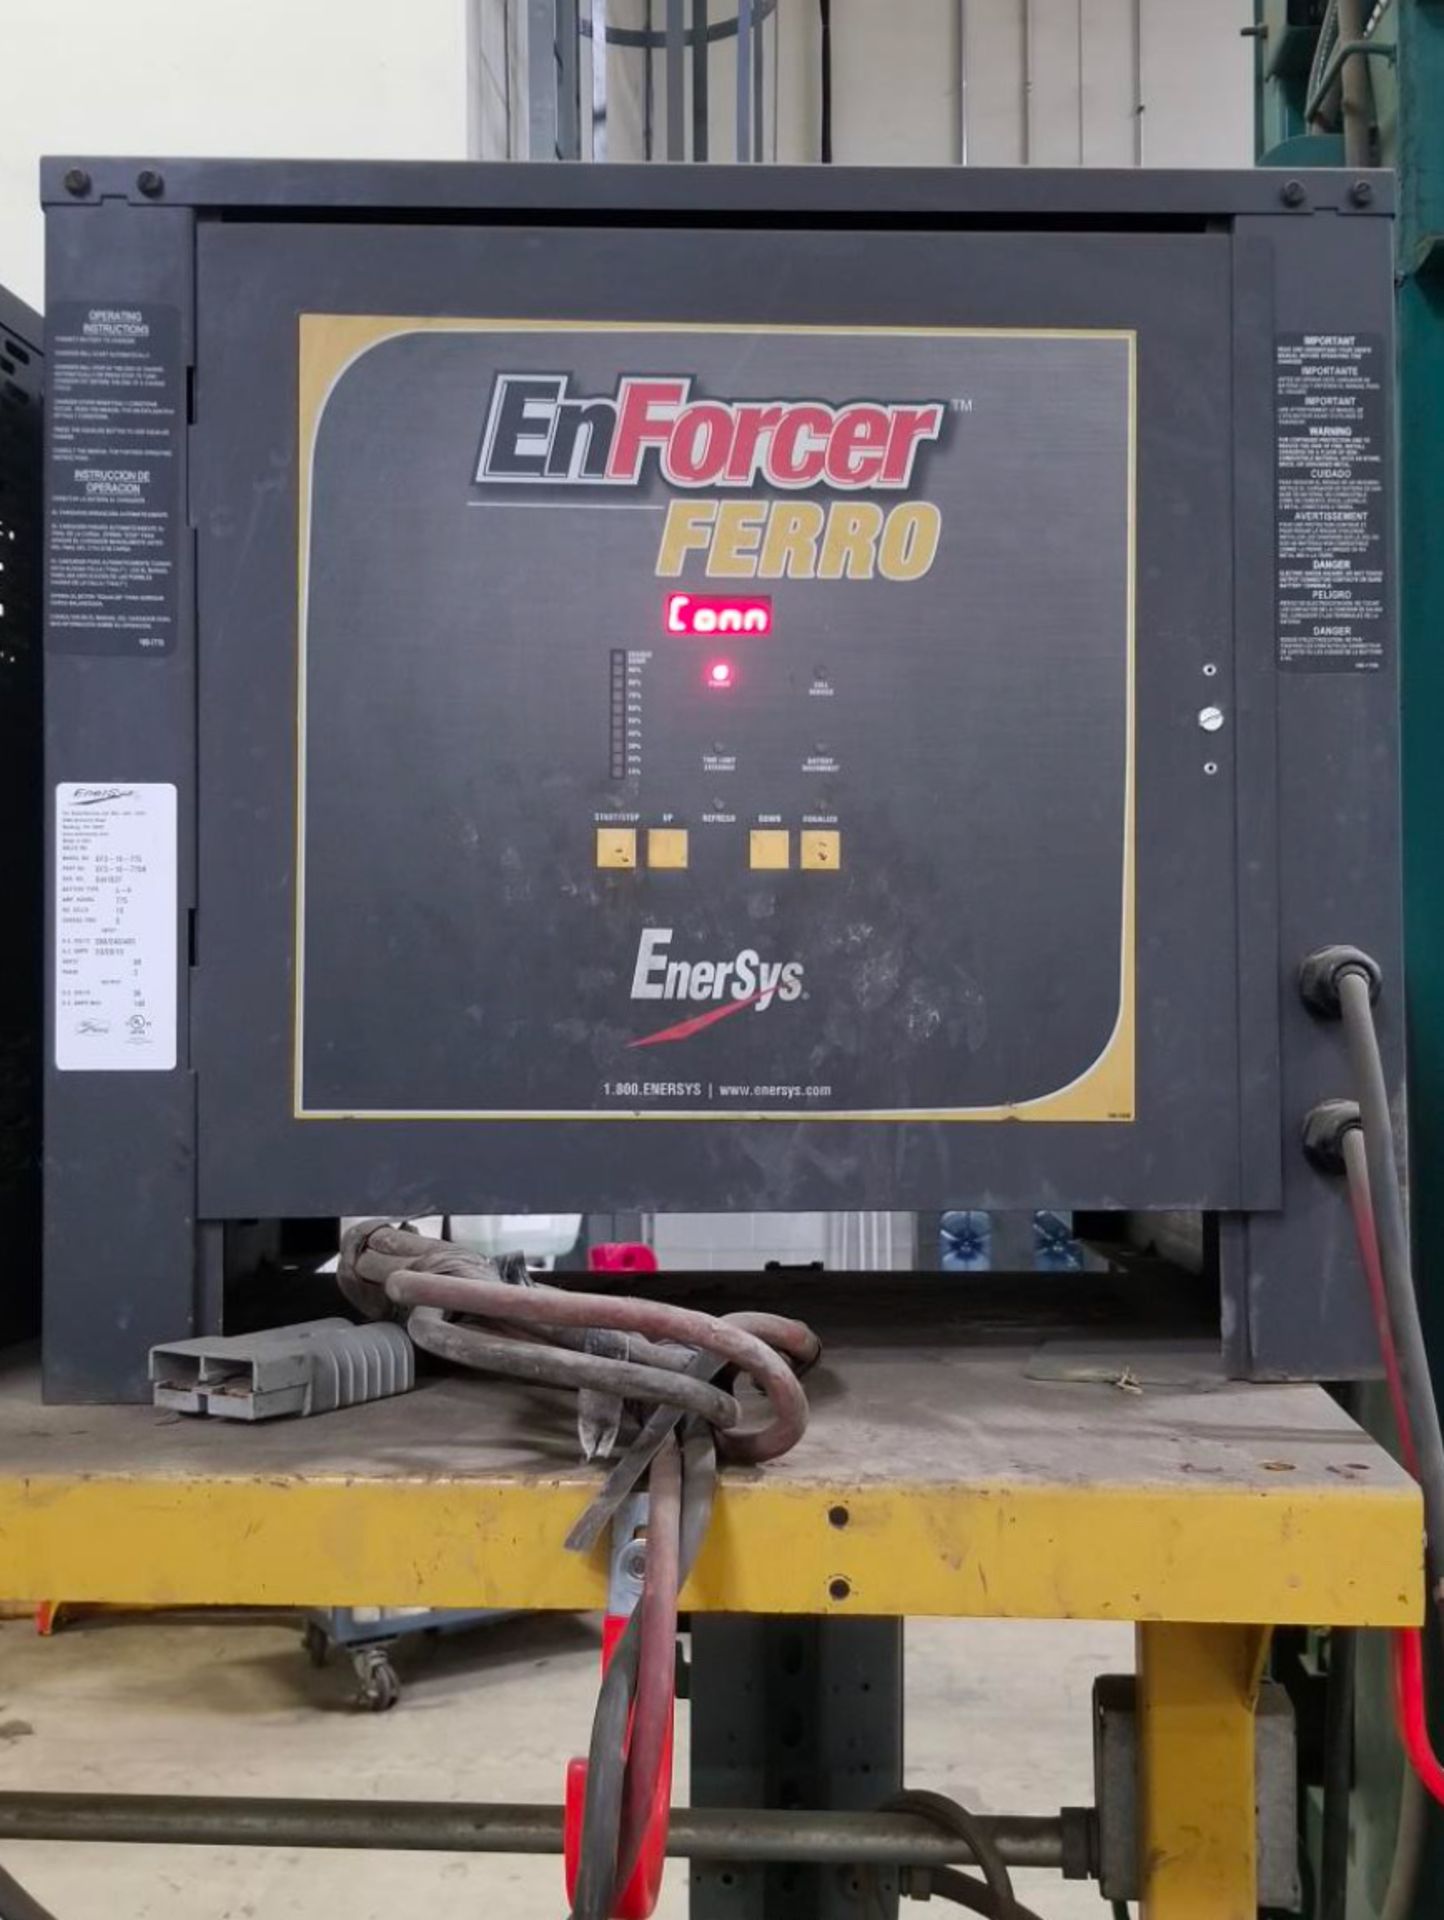 (4) Enersys Enforcer Ferro Forklift Battery Chargers, 36V / 140 Amps Max, Models EF3-18-775 - Image 7 of 10